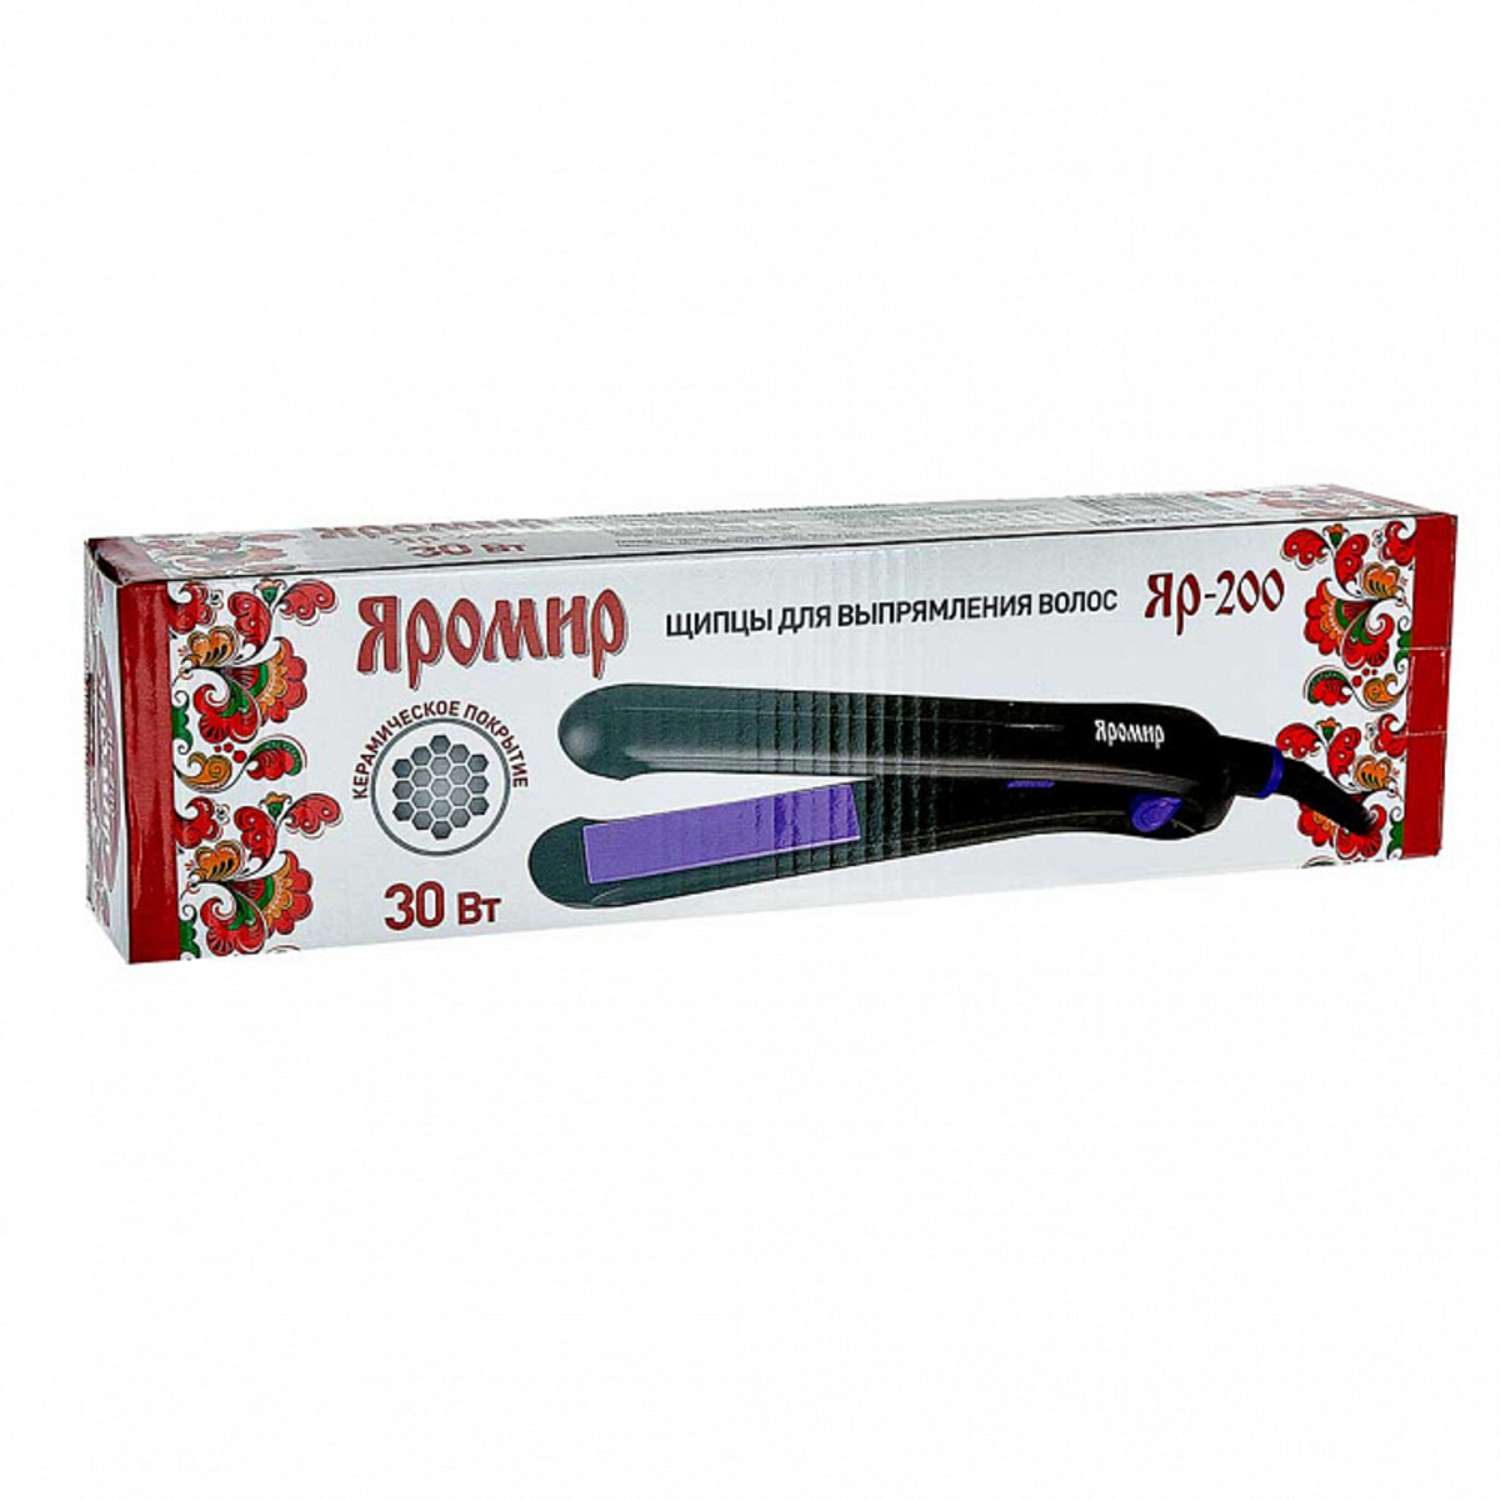 Щипцы для выпрямления волос Яромир ЯР-200 черный с фиолетовым - фото 6